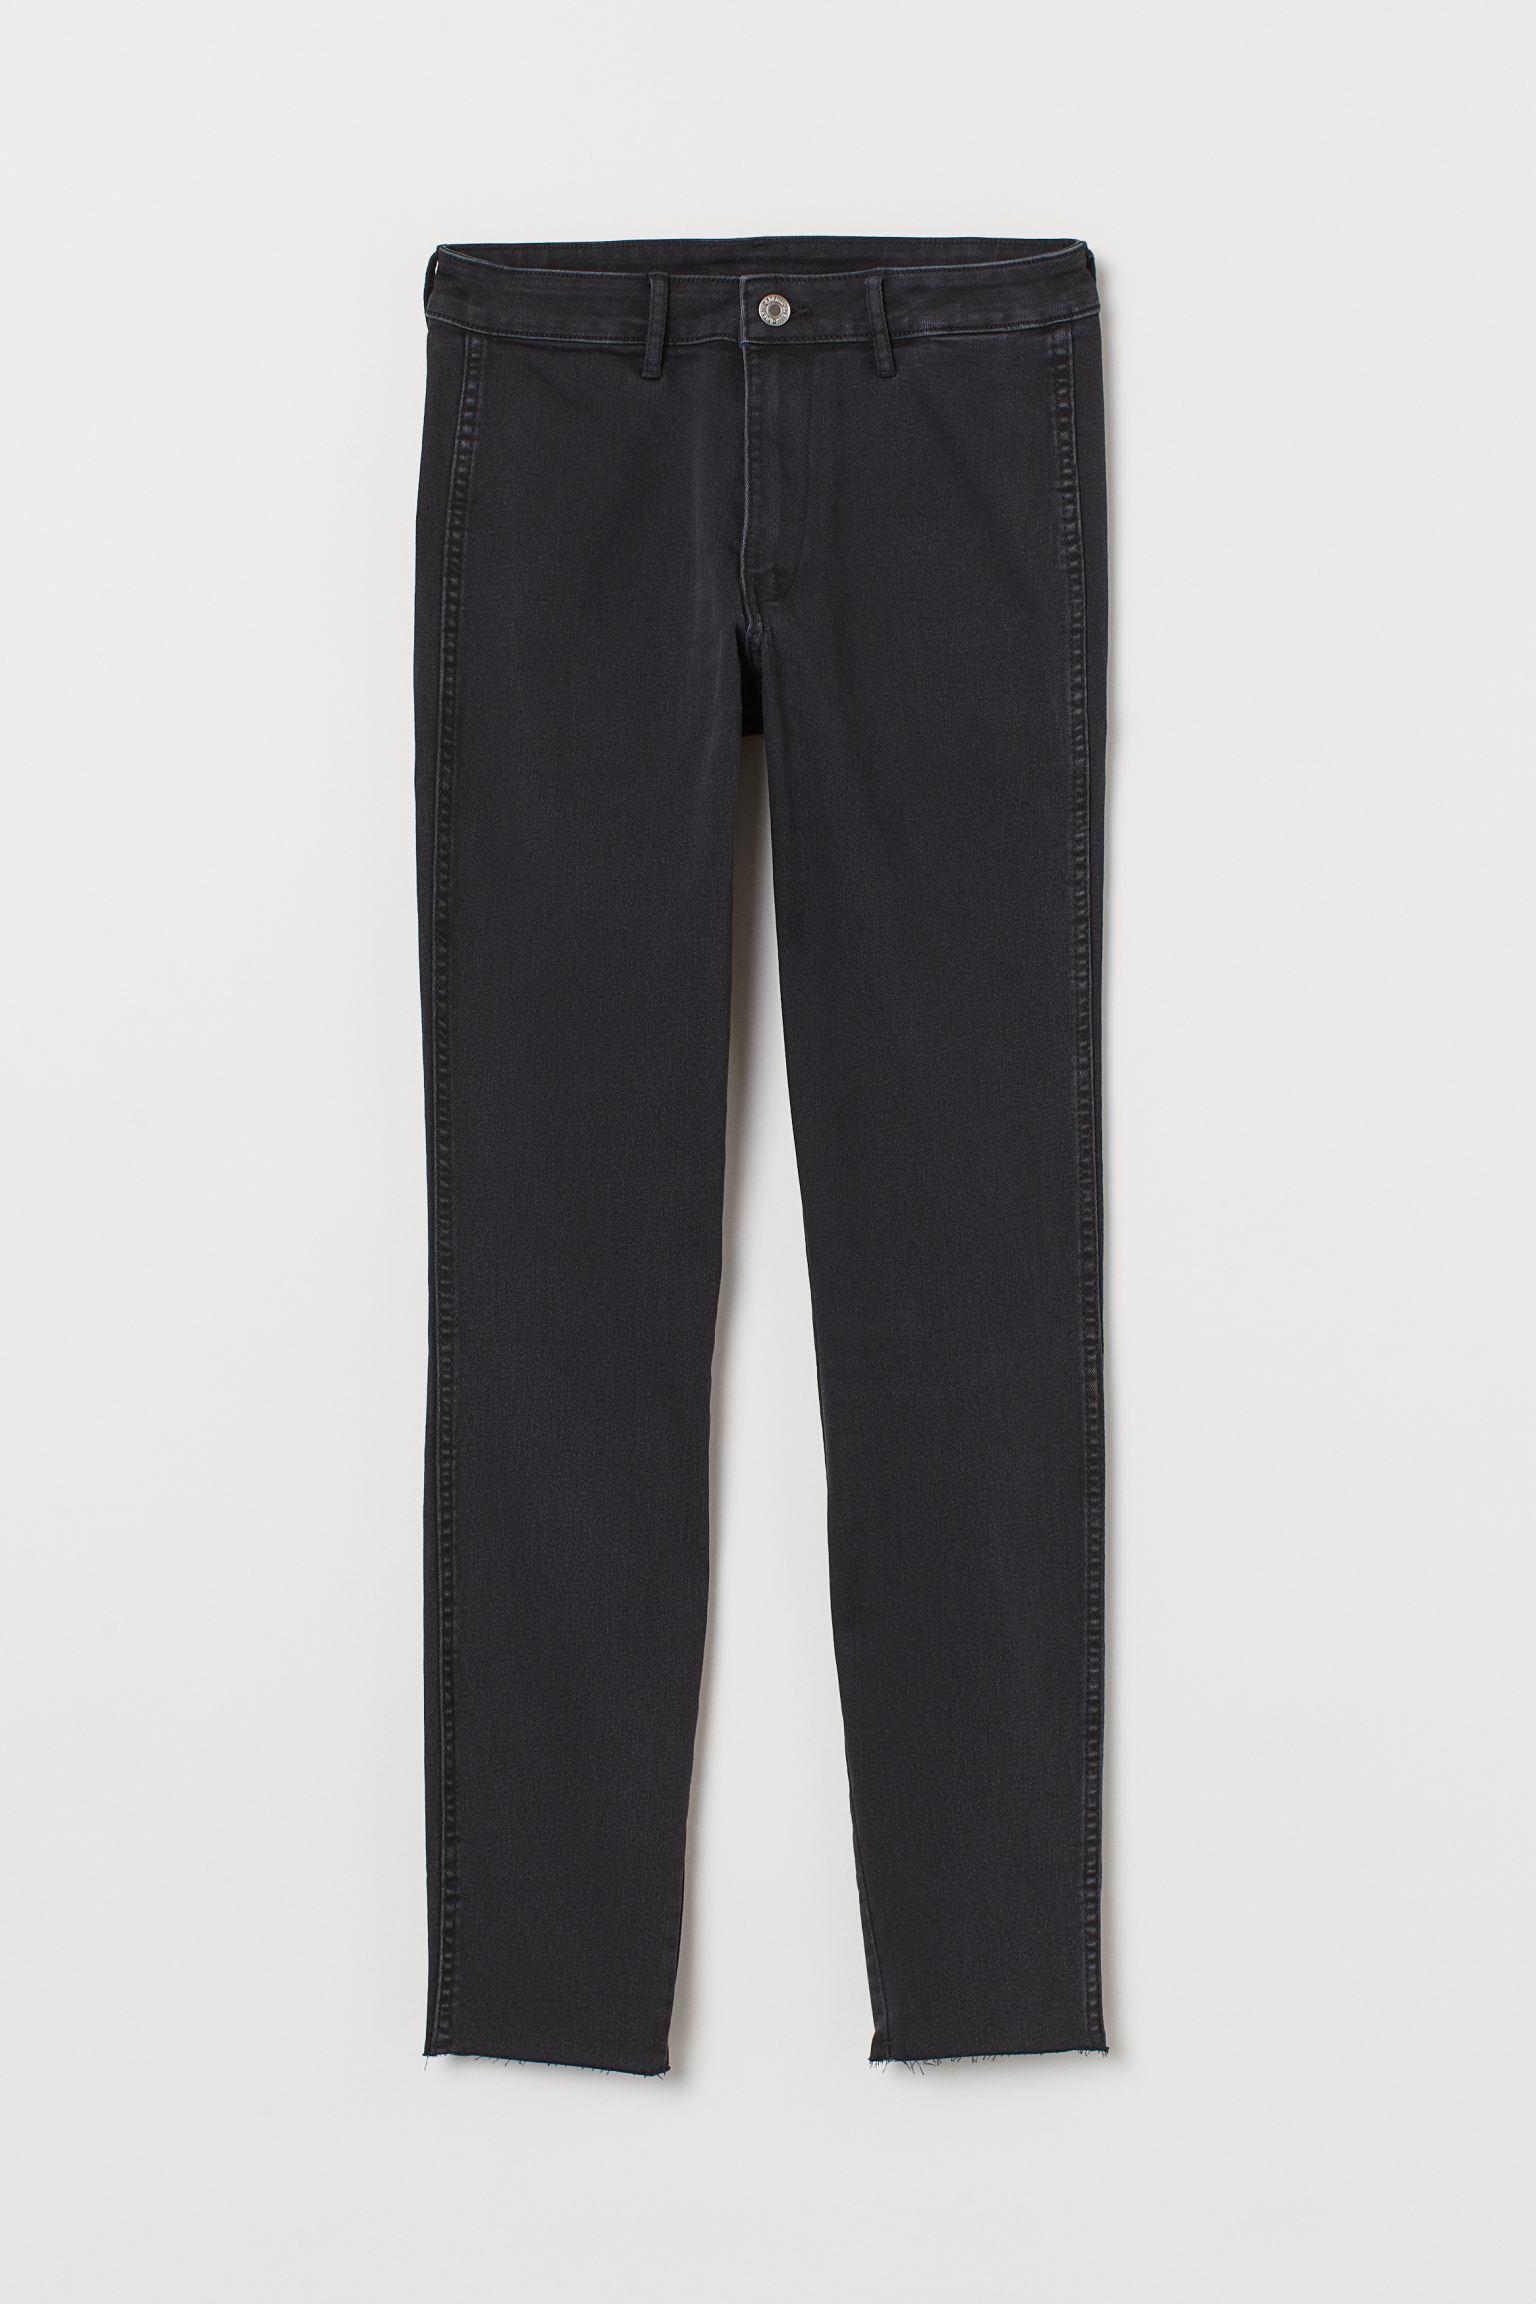 Отзыв на Узкие джинсы по щиколотку из Интернет-Магазина H&M